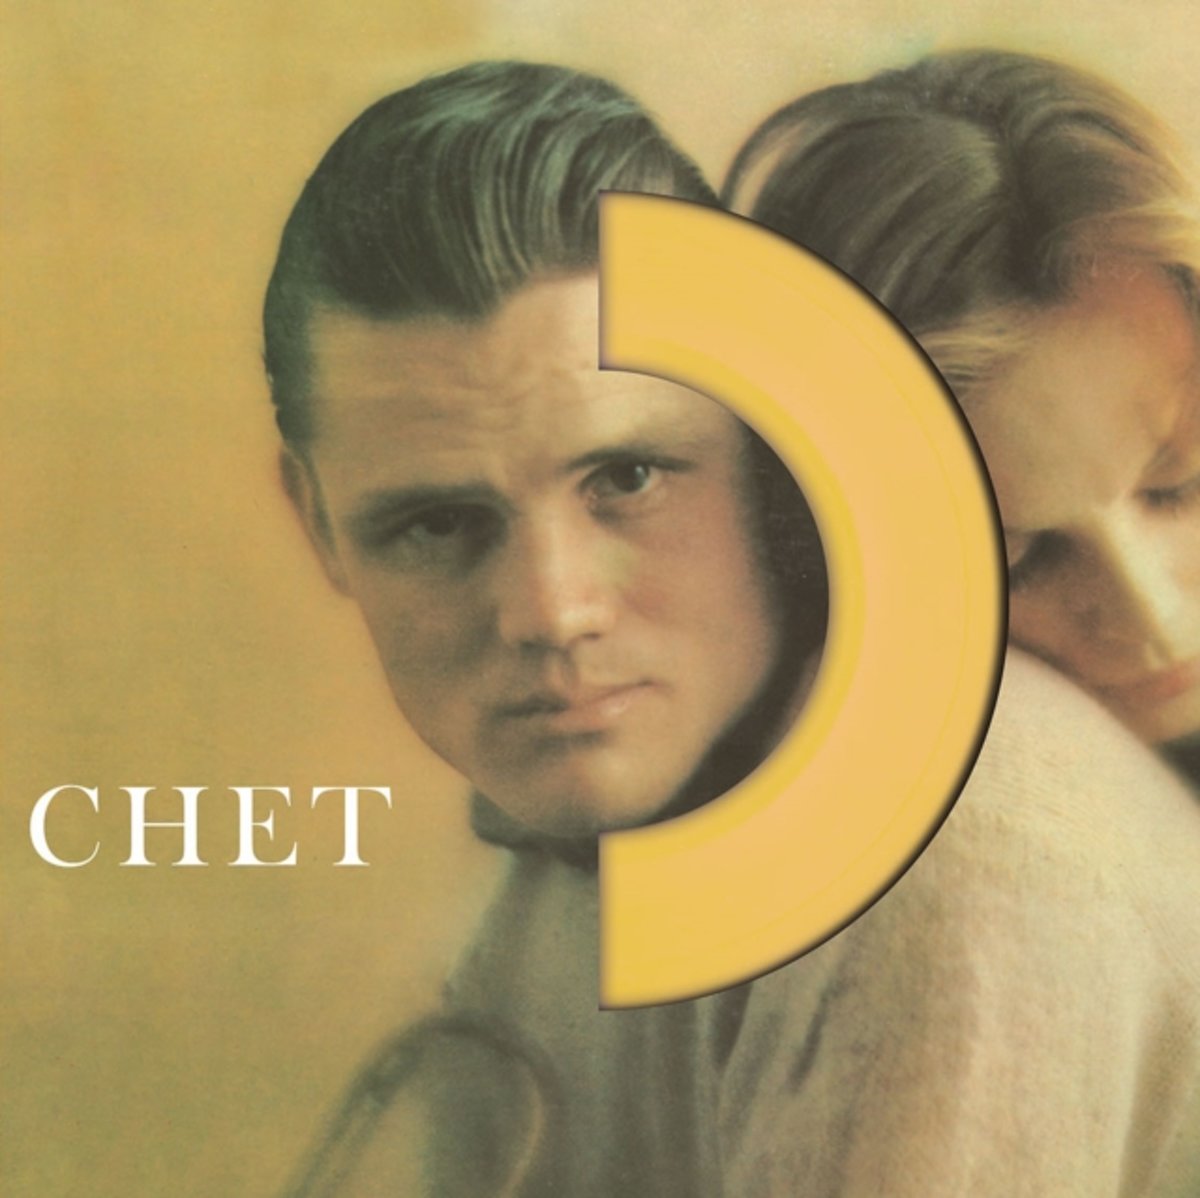 Chet - Vinyl | Chet Baker